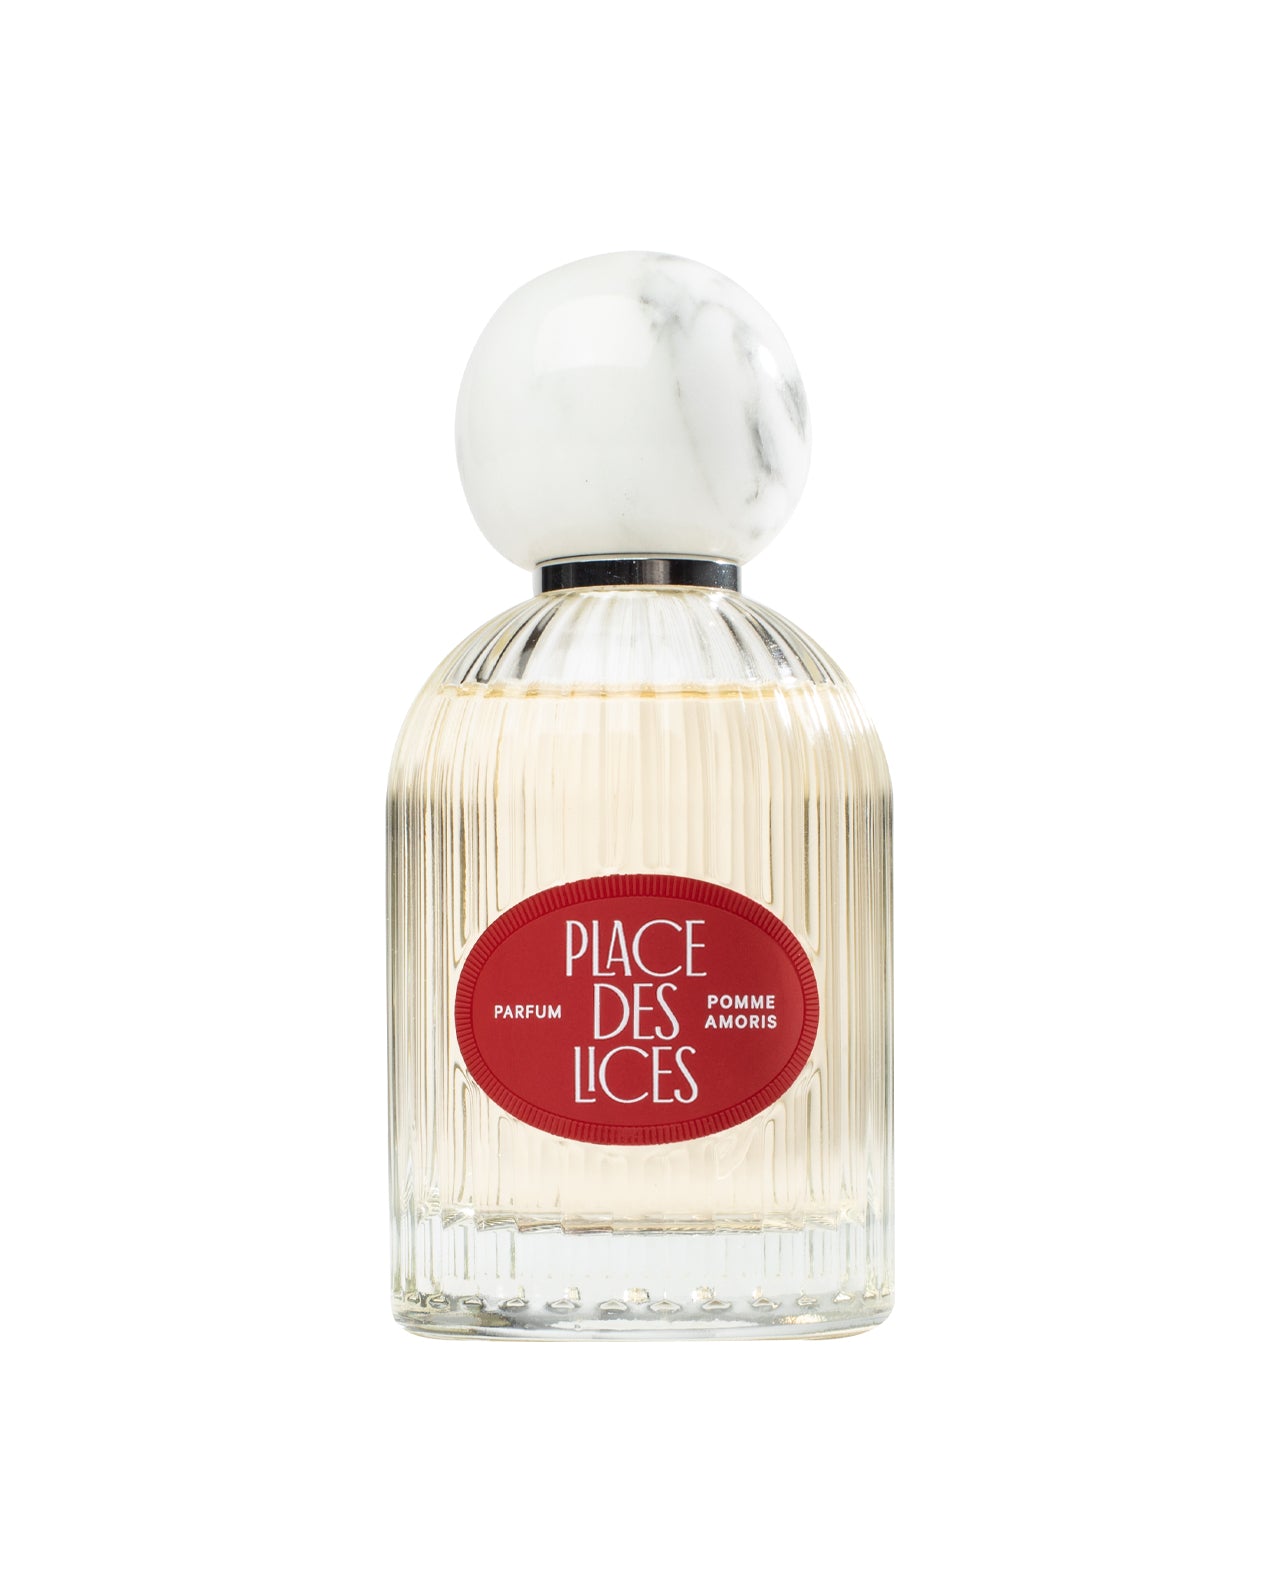 Pomme Amoris 100ml Eau de Parfum Bottle by Place des Lices